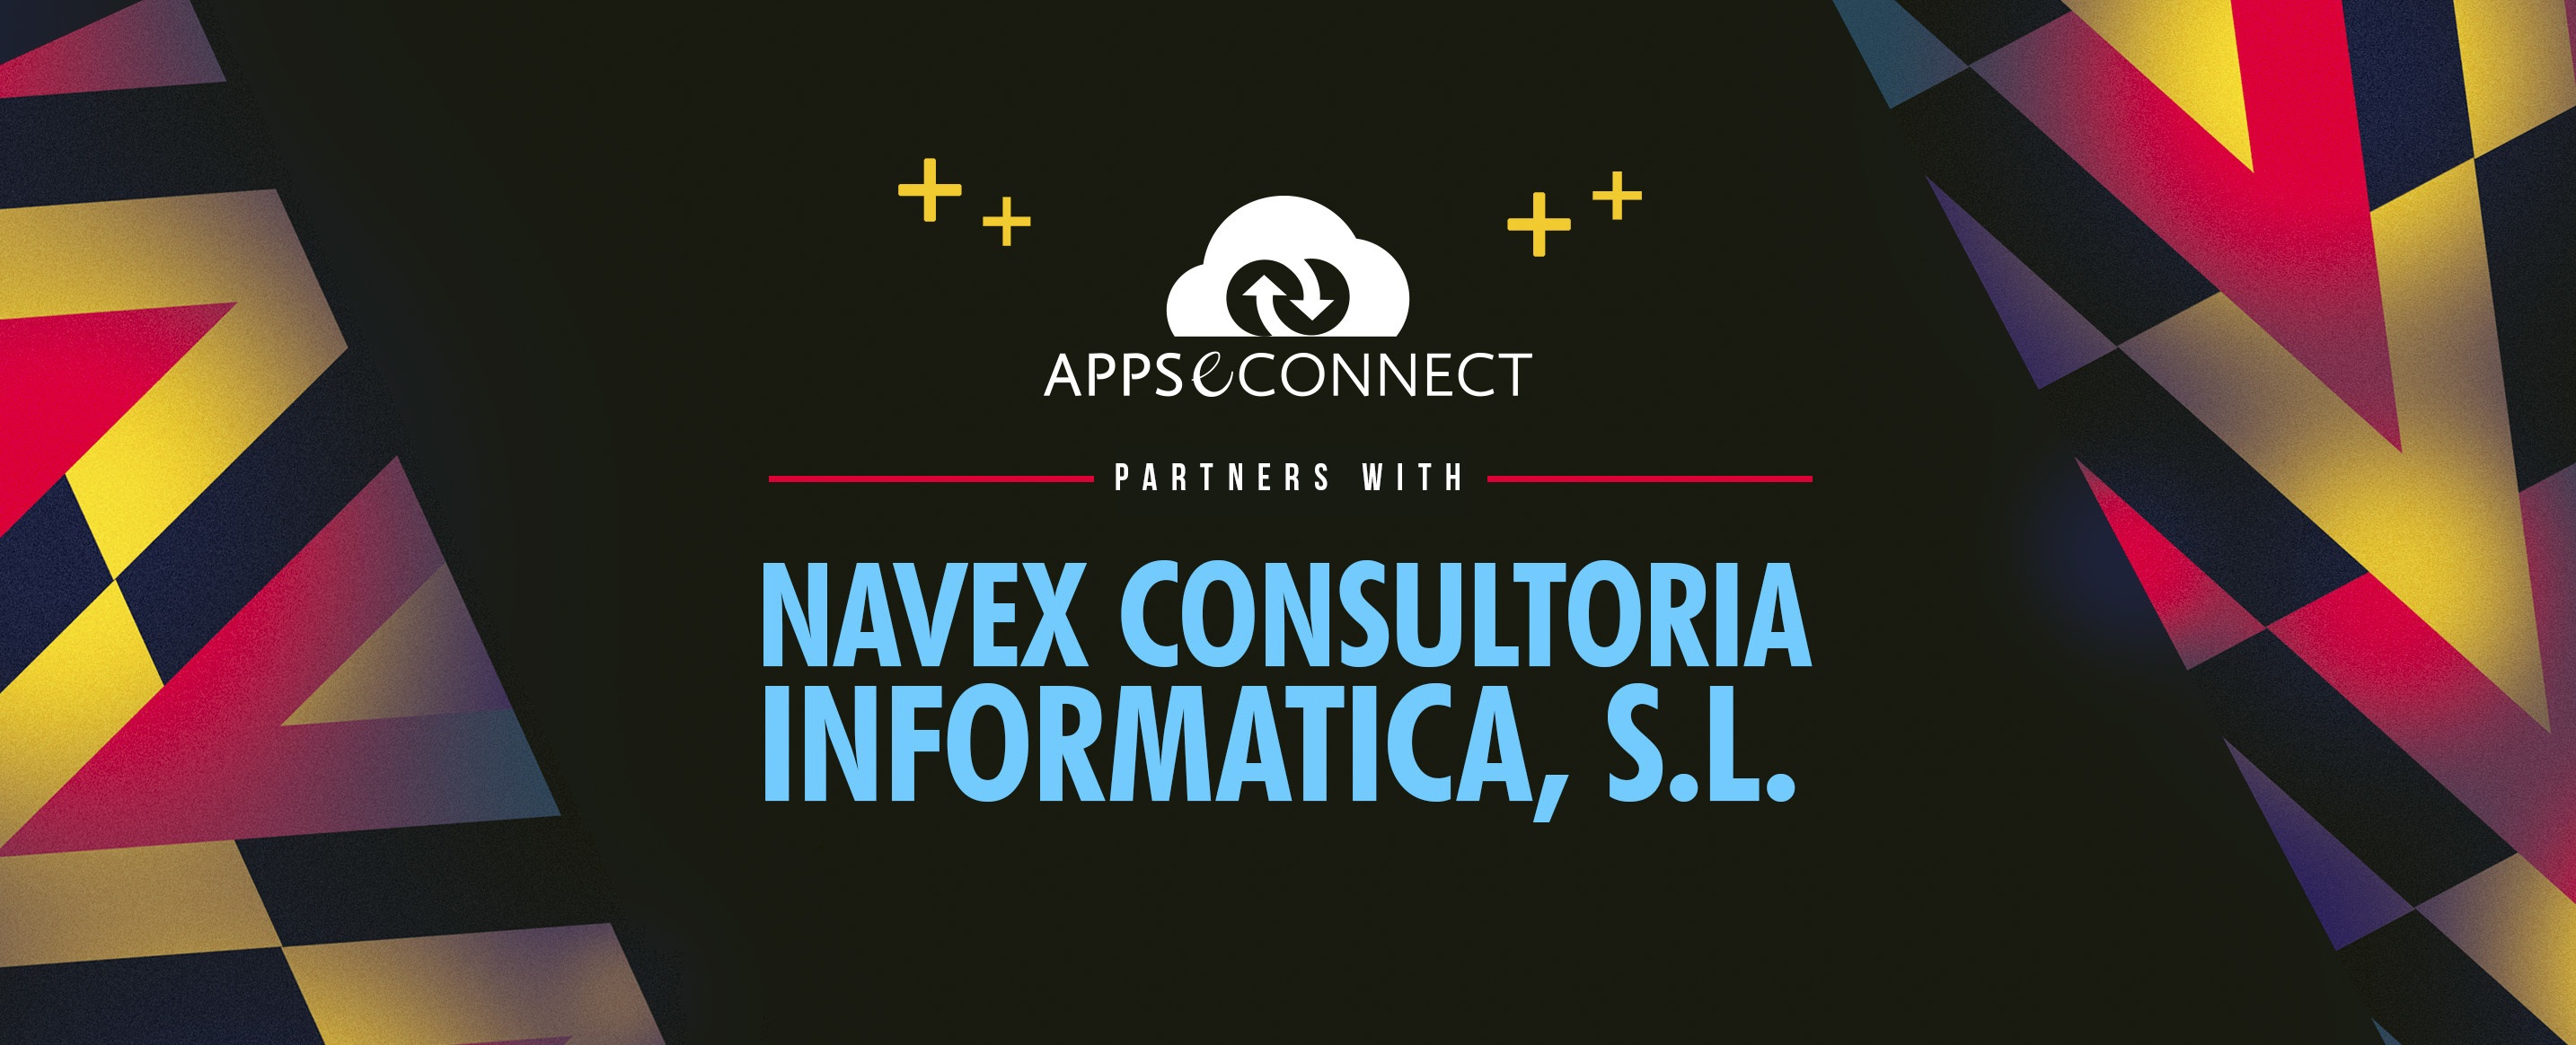 Navex Consultoria Informatica S.L.-Partner-social-post